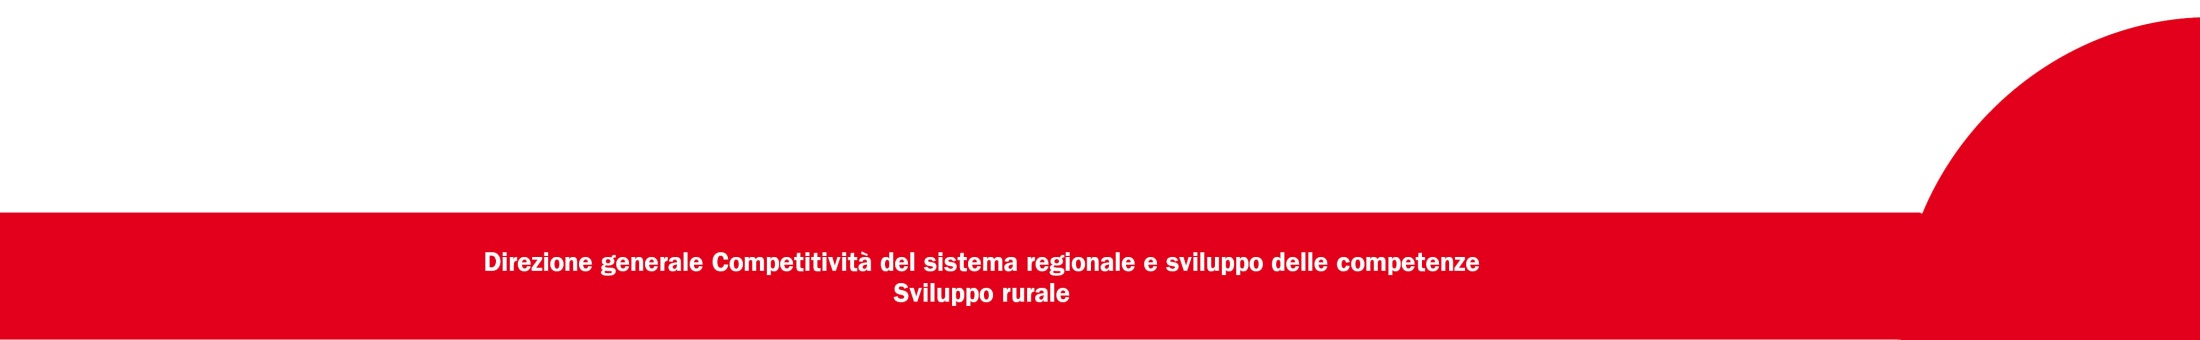 Verso la nuova PAC 2014-2020 per lo sviluppo rurale in Toscana Roberto Pagni Regione Toscana Dirigente Settore Politiche